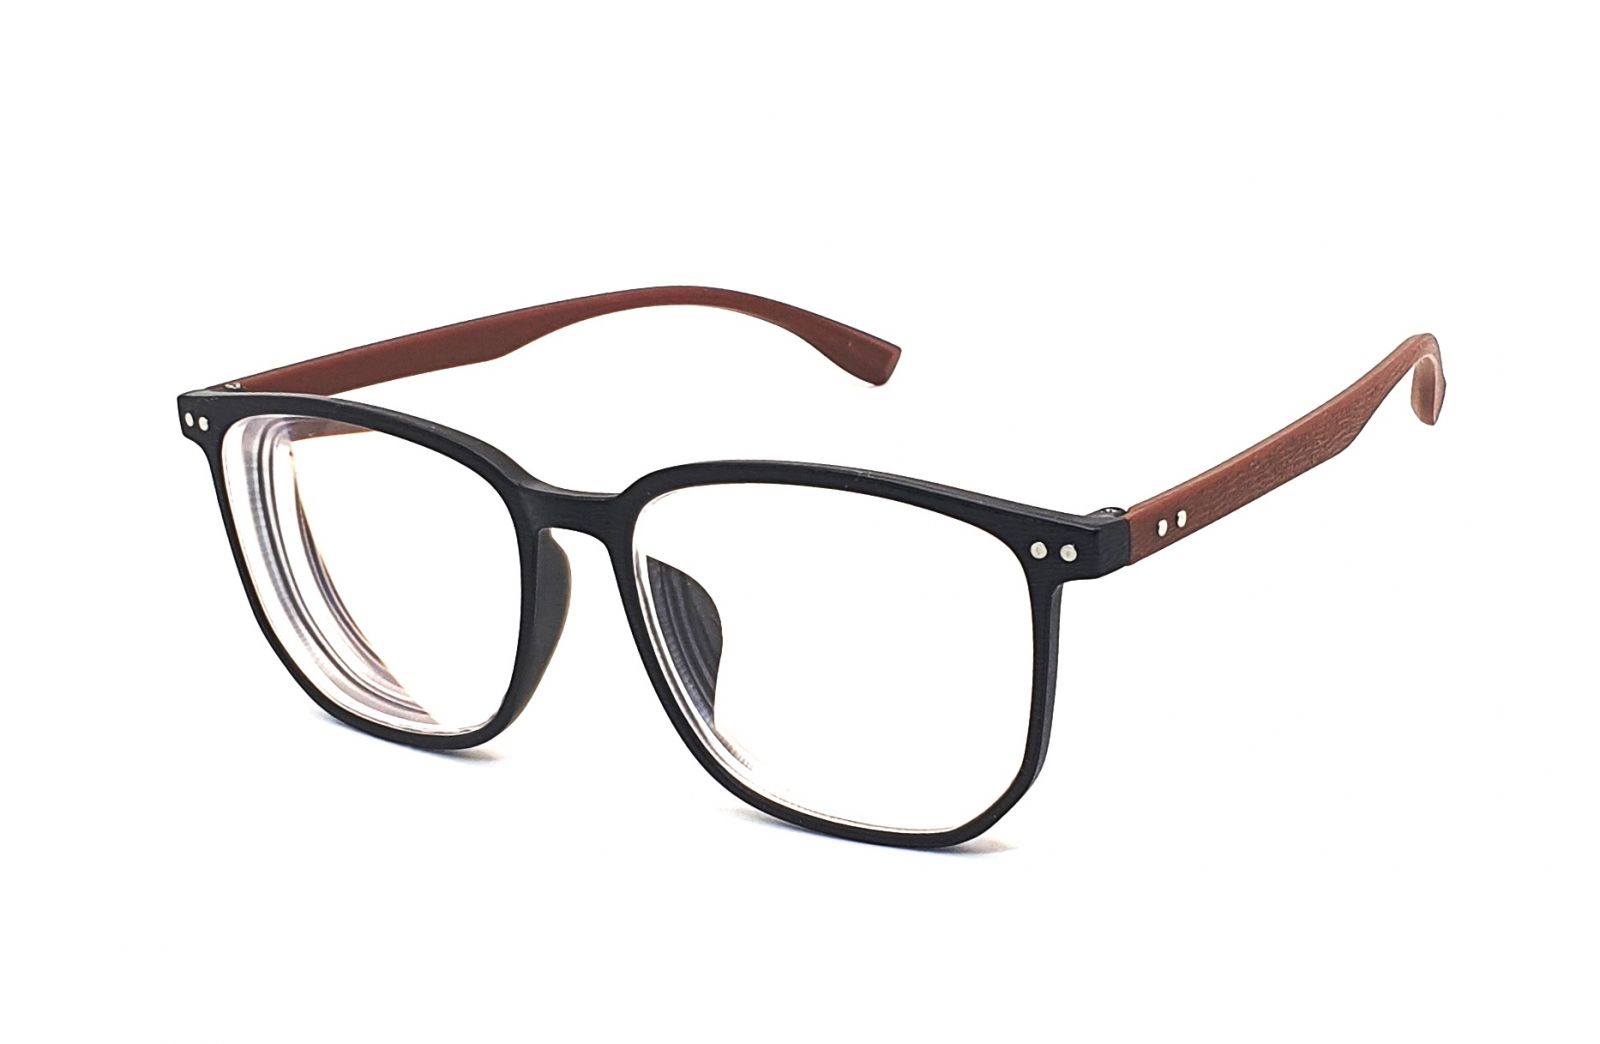 Samozabarvovací dioptrické brýle F23 / -3,00 black/brown